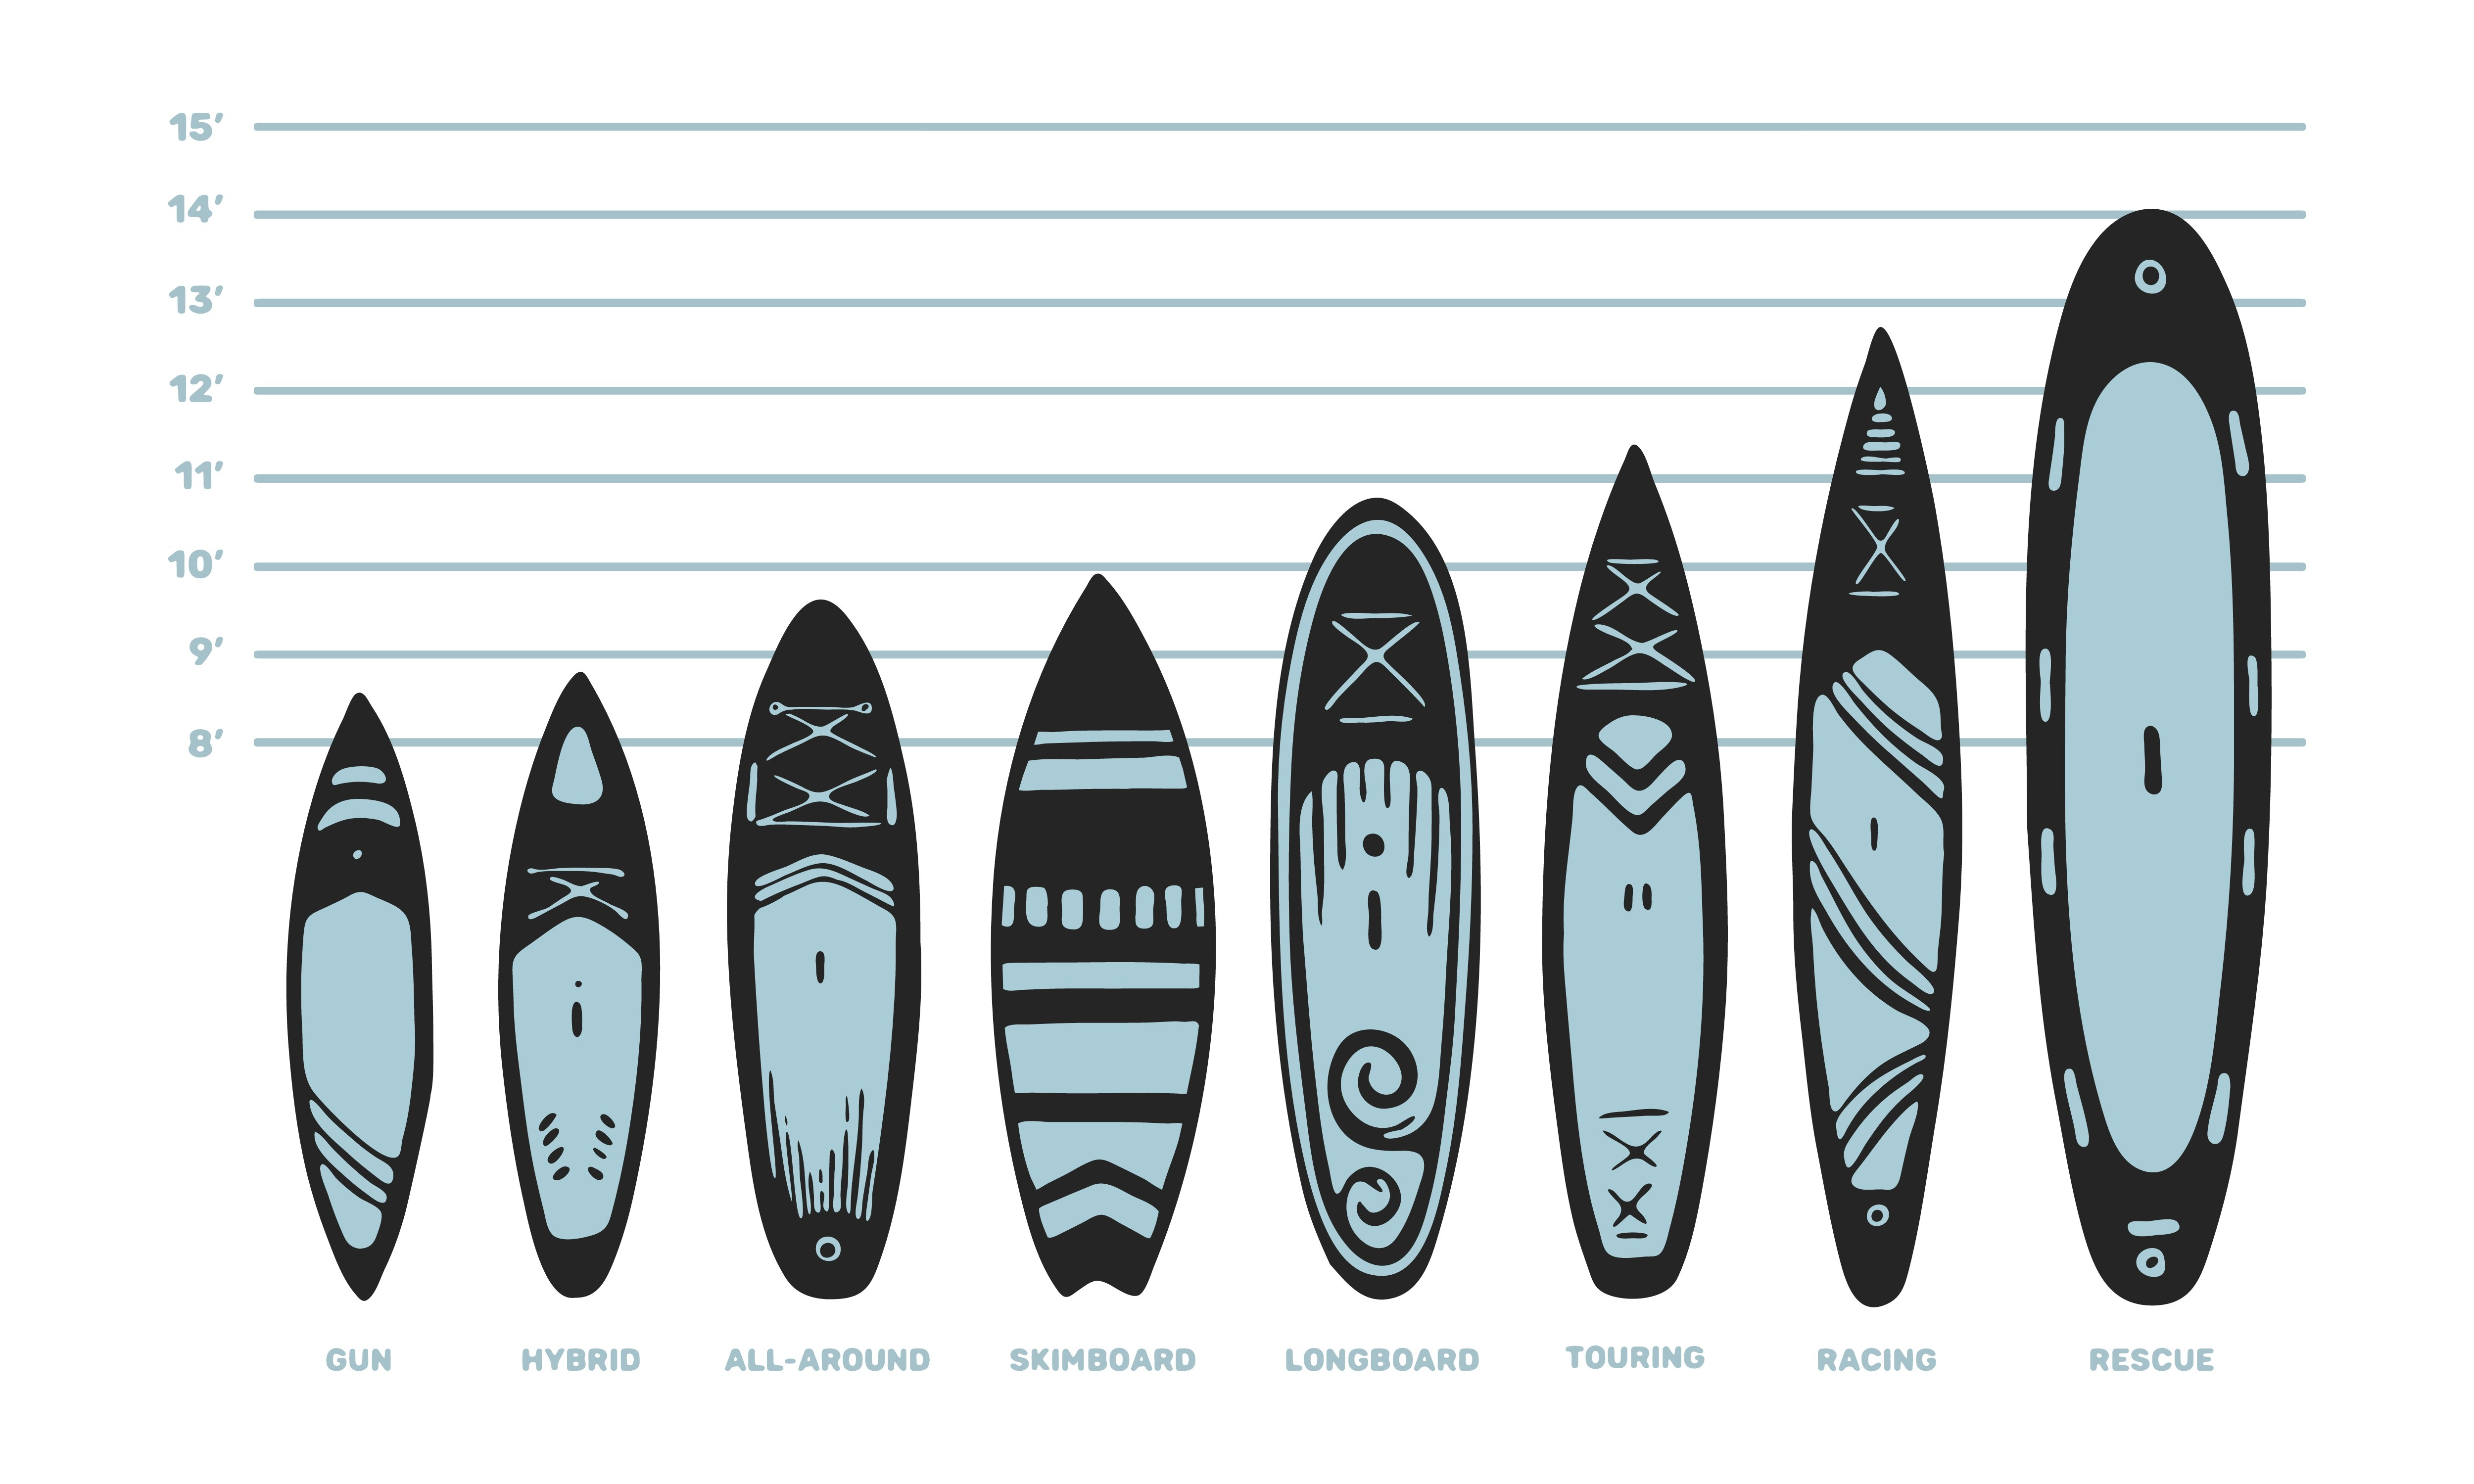 Τα paddleboards έρχονται σε μια απίστευτη σειρά σχημάτων και μορφών